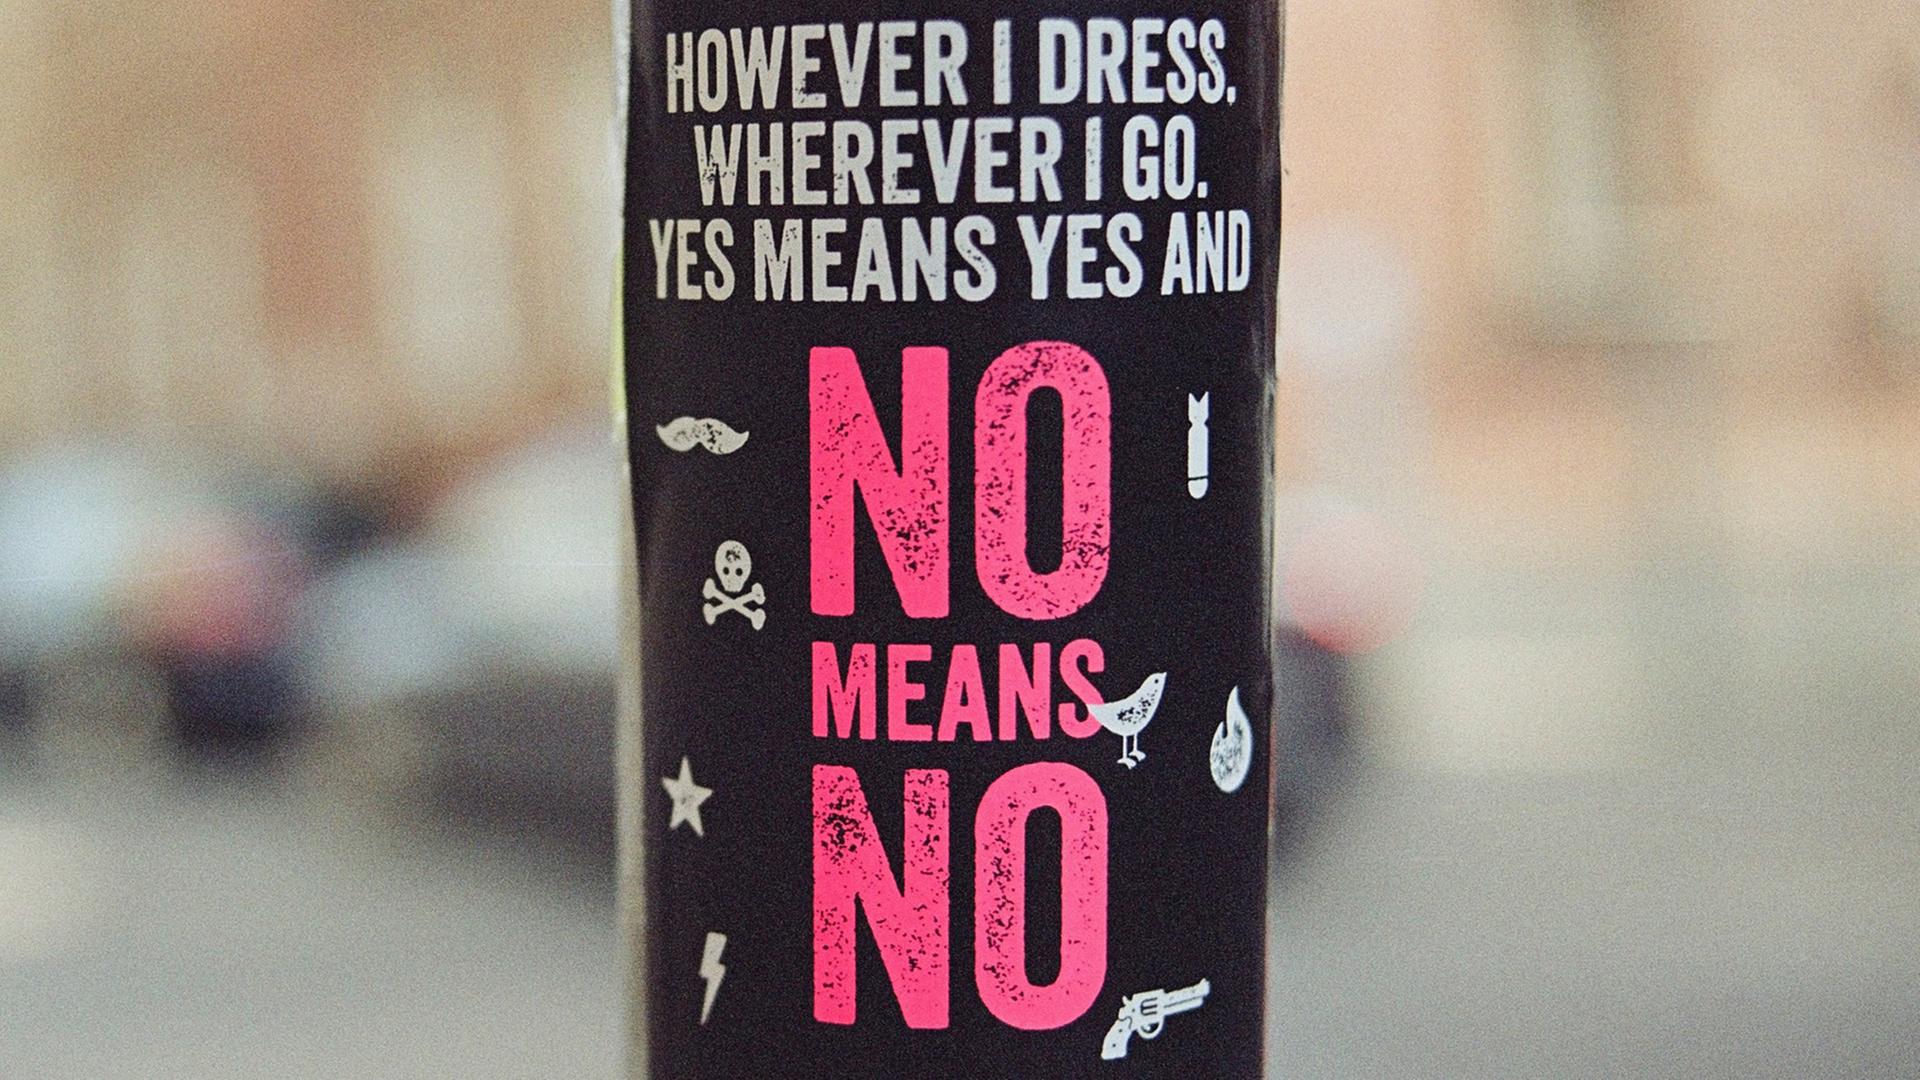 Eine rote Aufschrift auf schwarzem Hintergrund: However I dress, wherever I go, yes means yes and no means no. (Übersetzung: Wie immer ich mich kleide, wo immer ich gehe: Ja meint Ja und Nein meint Nein)